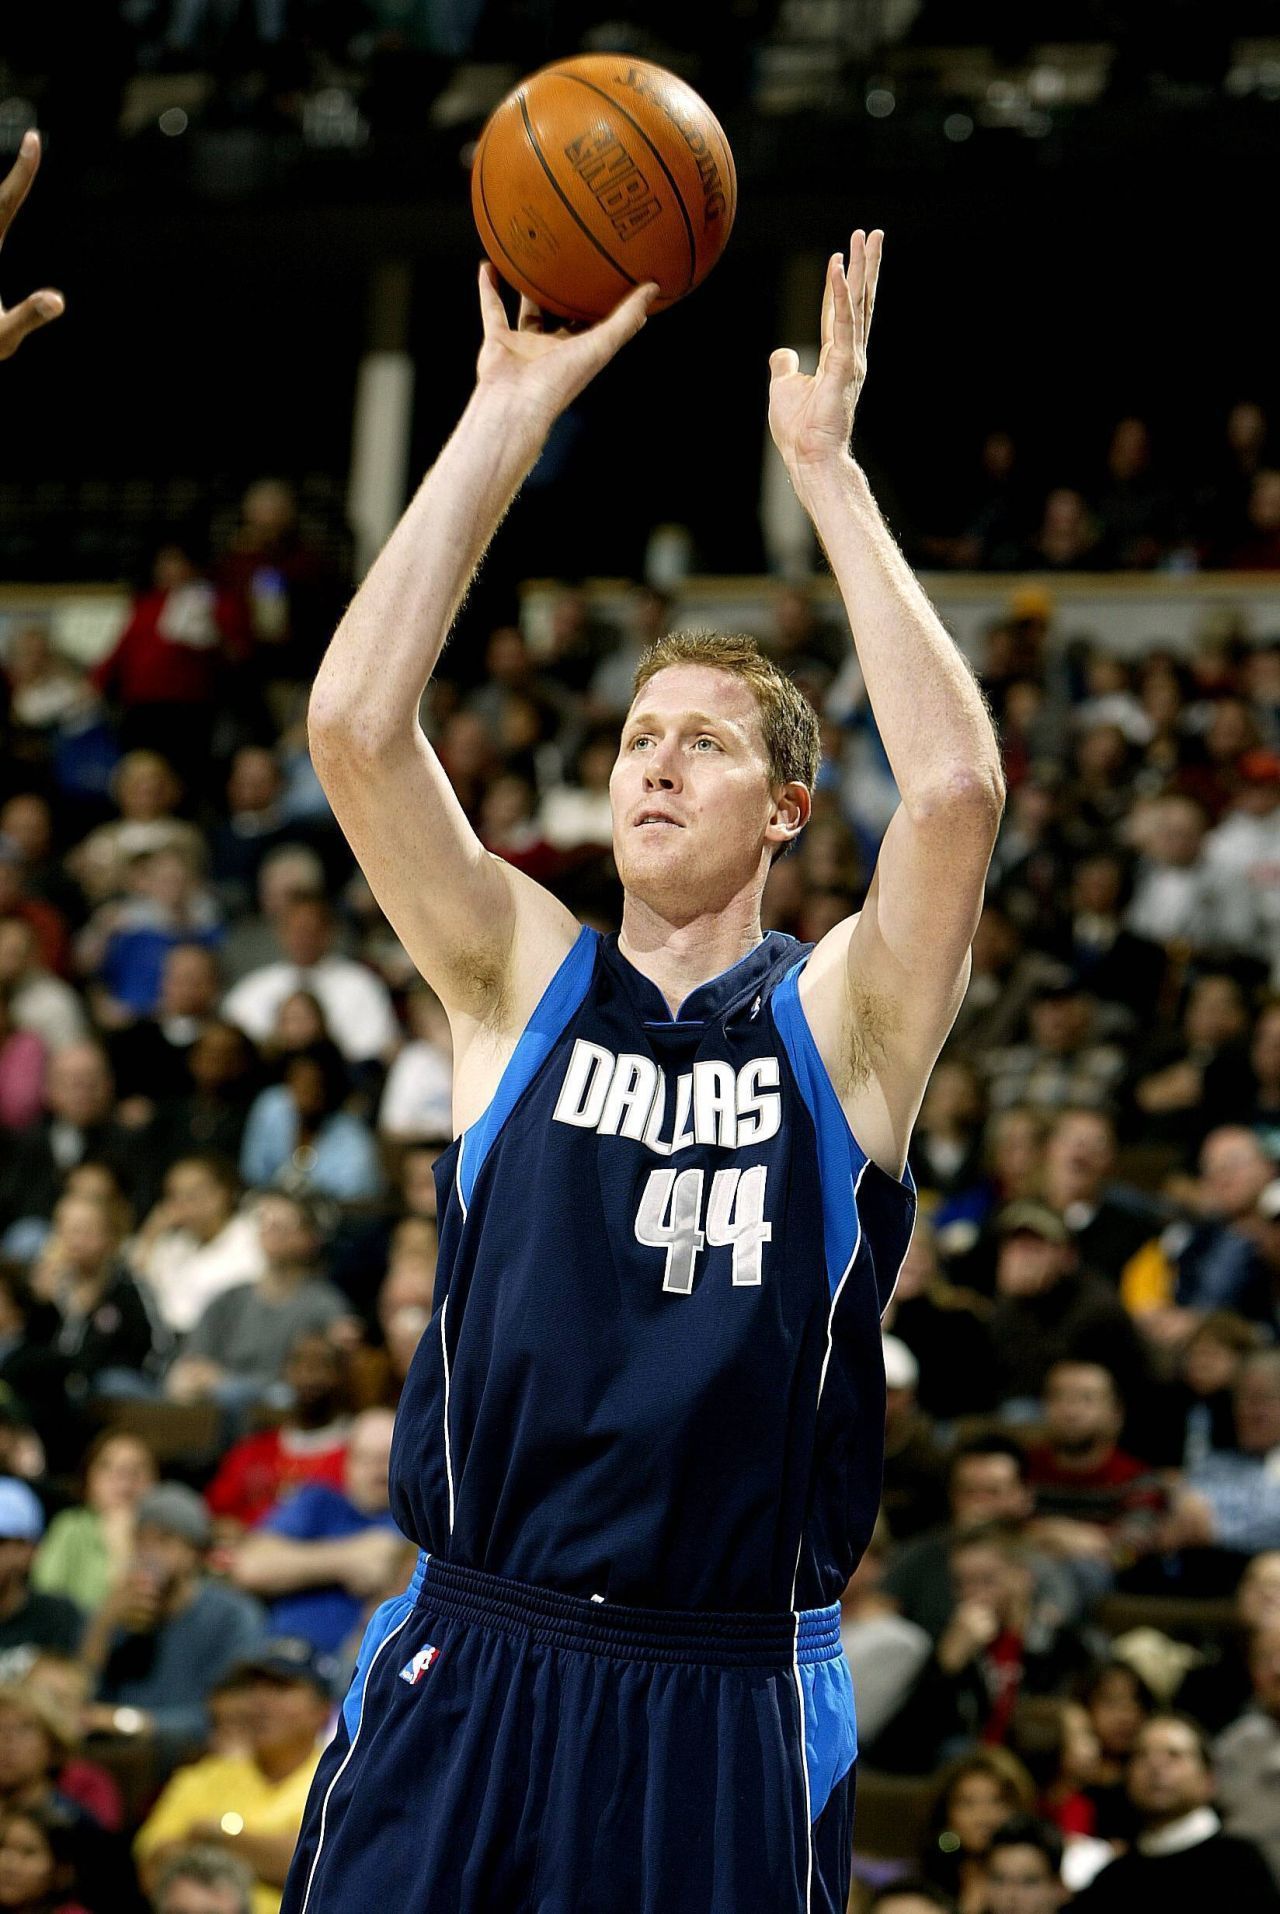 Der deutsch-US-amerikanische Basketballer Shawn Bradley ist Mormone. Als Missionar war er in Australien unterwegs. 